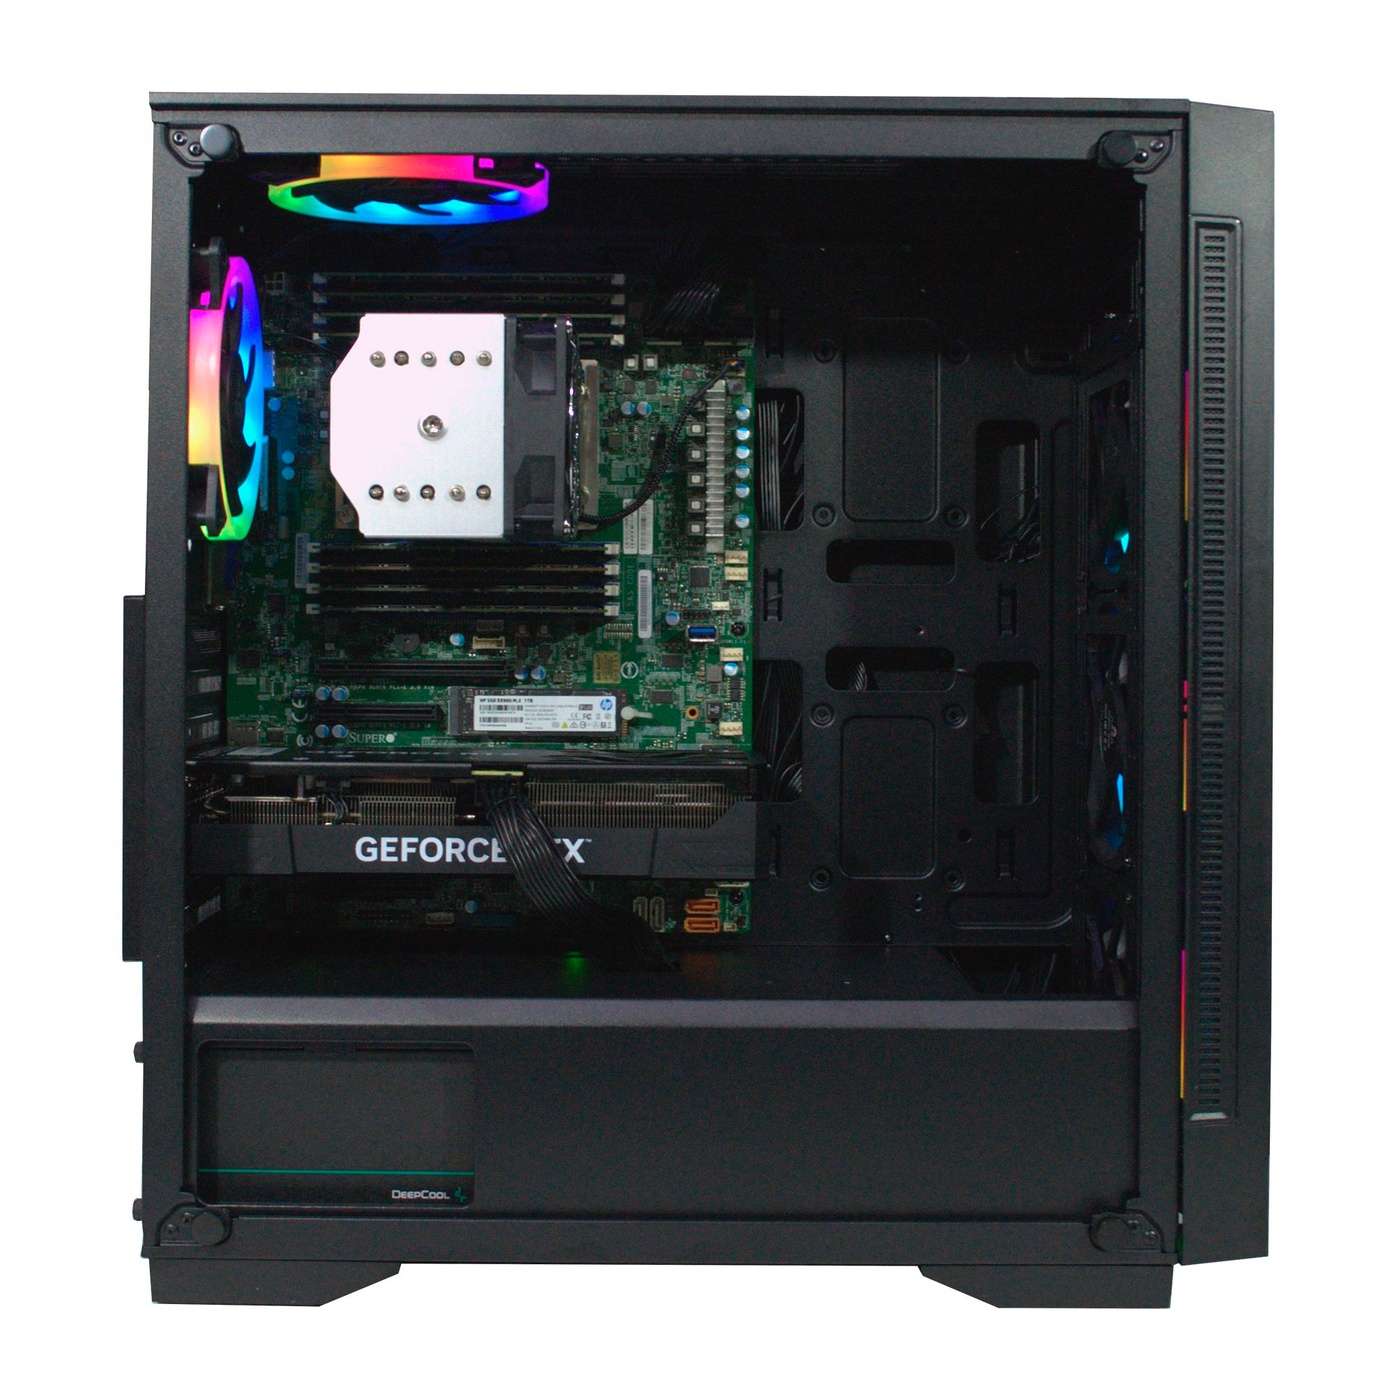 Робоча станція PowerUp #270 AMD EPYC 7F52/128 GB/SSD 1TB/GeForce RTX 4060Ti 16GB